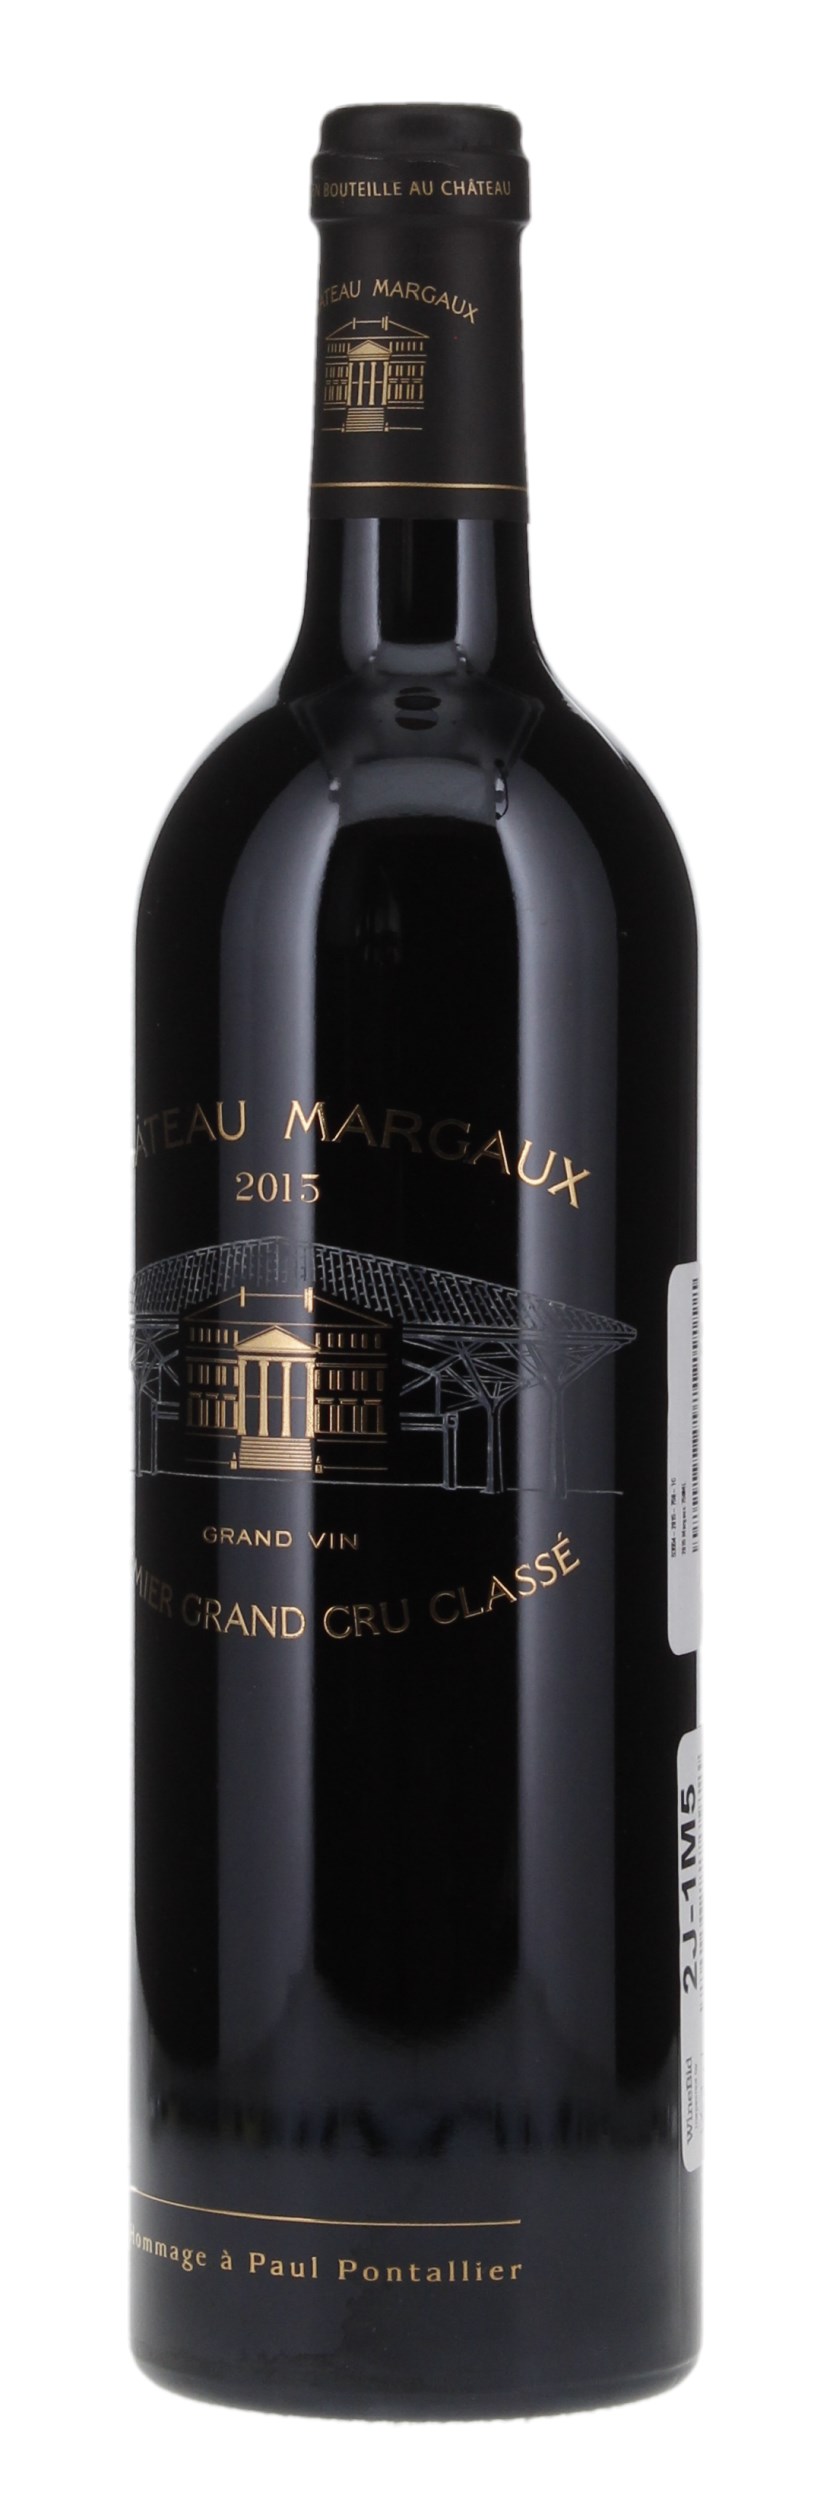 2015 Château Margaux, 750ml